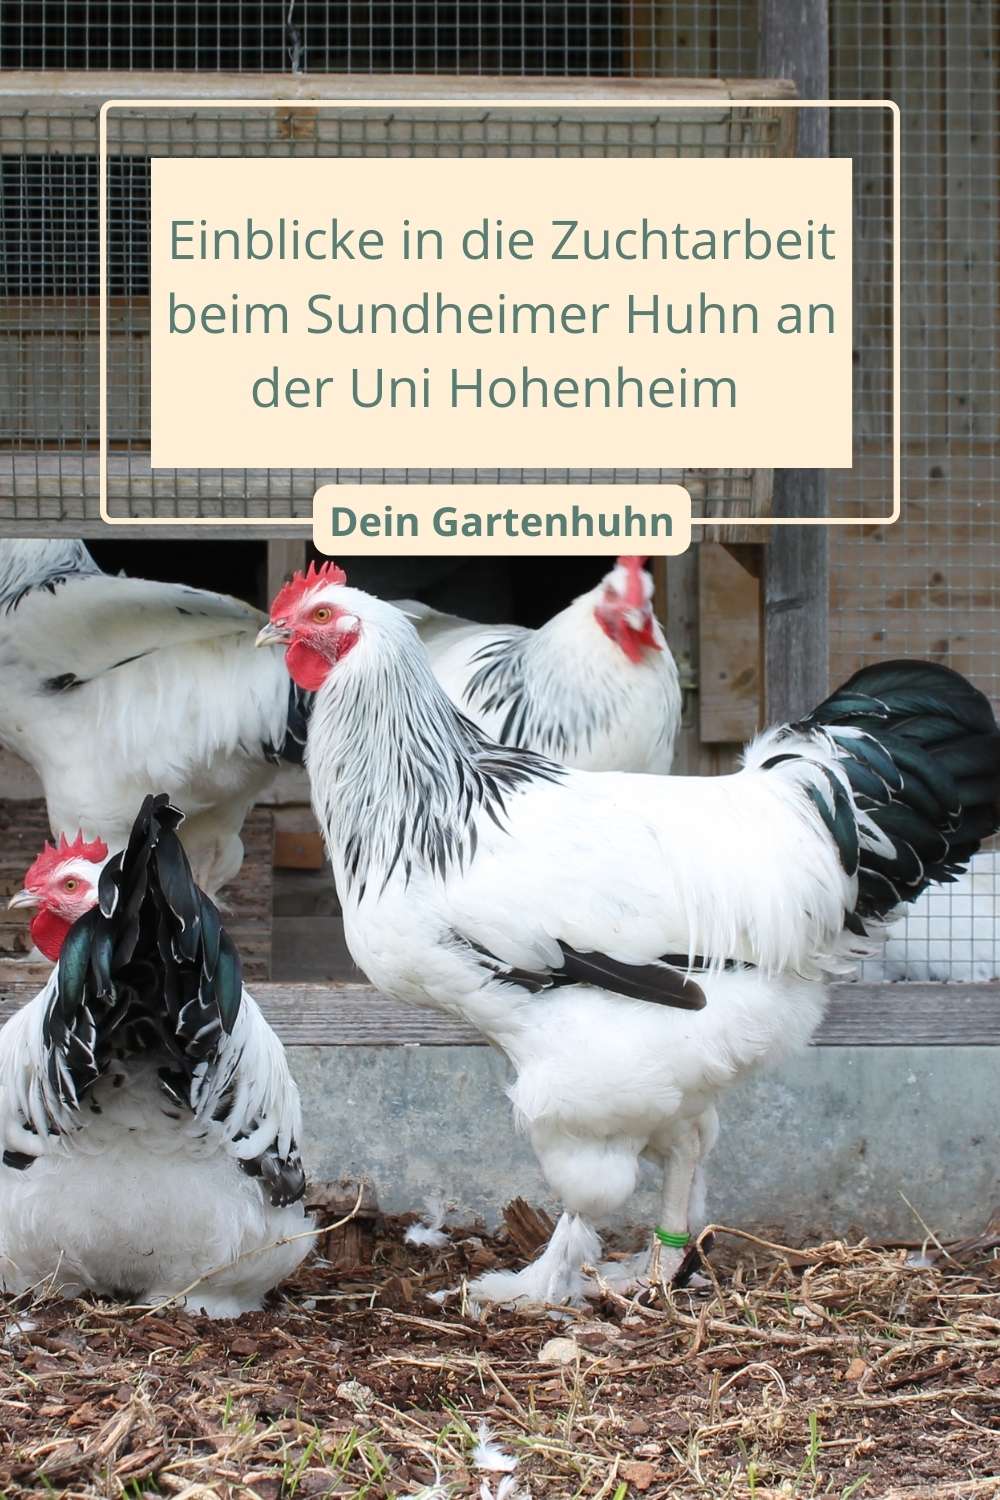 Einblicke in die Zuchtarbeit beim Sundheimer Huhn an der Uni Hohenheim